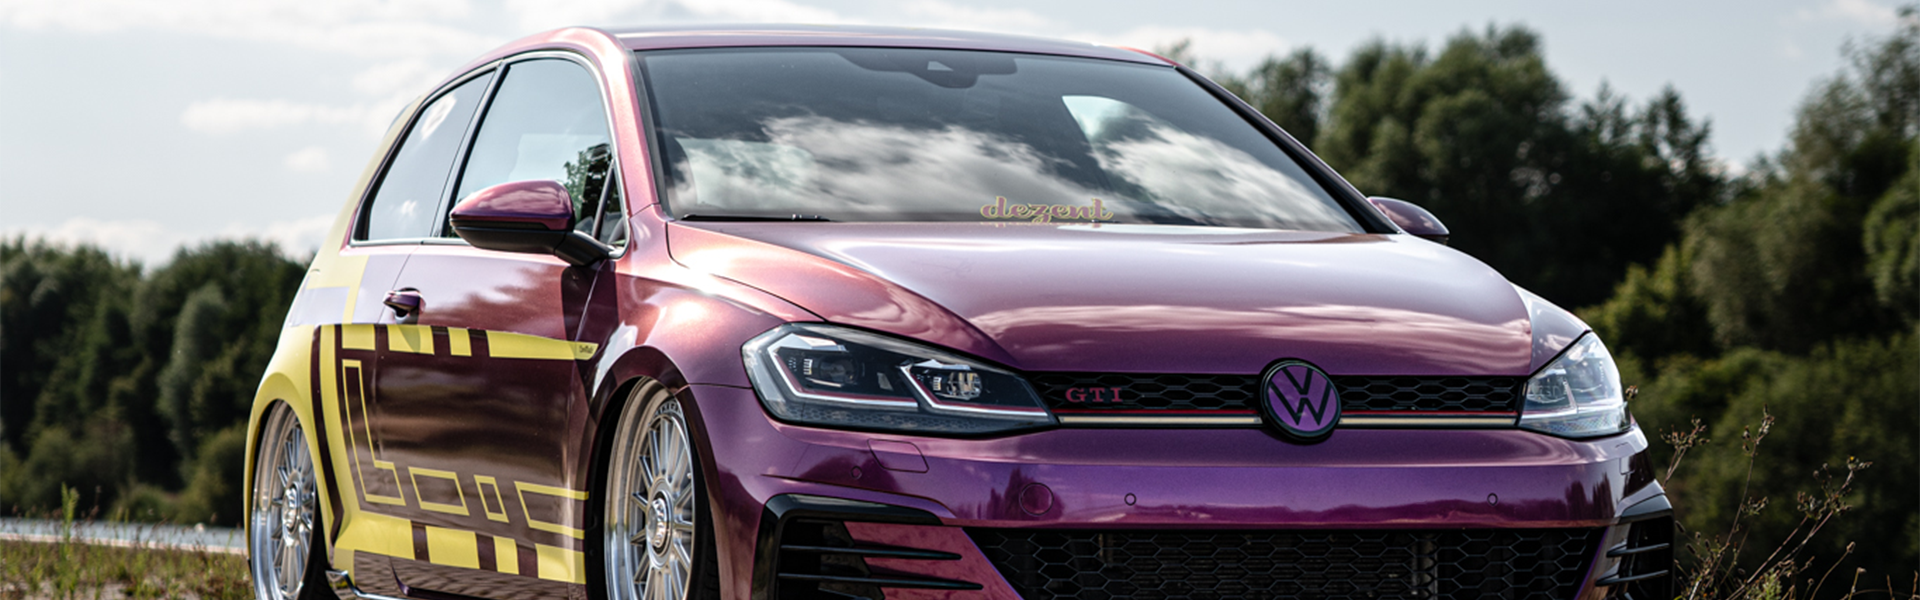 Joker Purple Golf MK7 GTI by @lucs_tcr